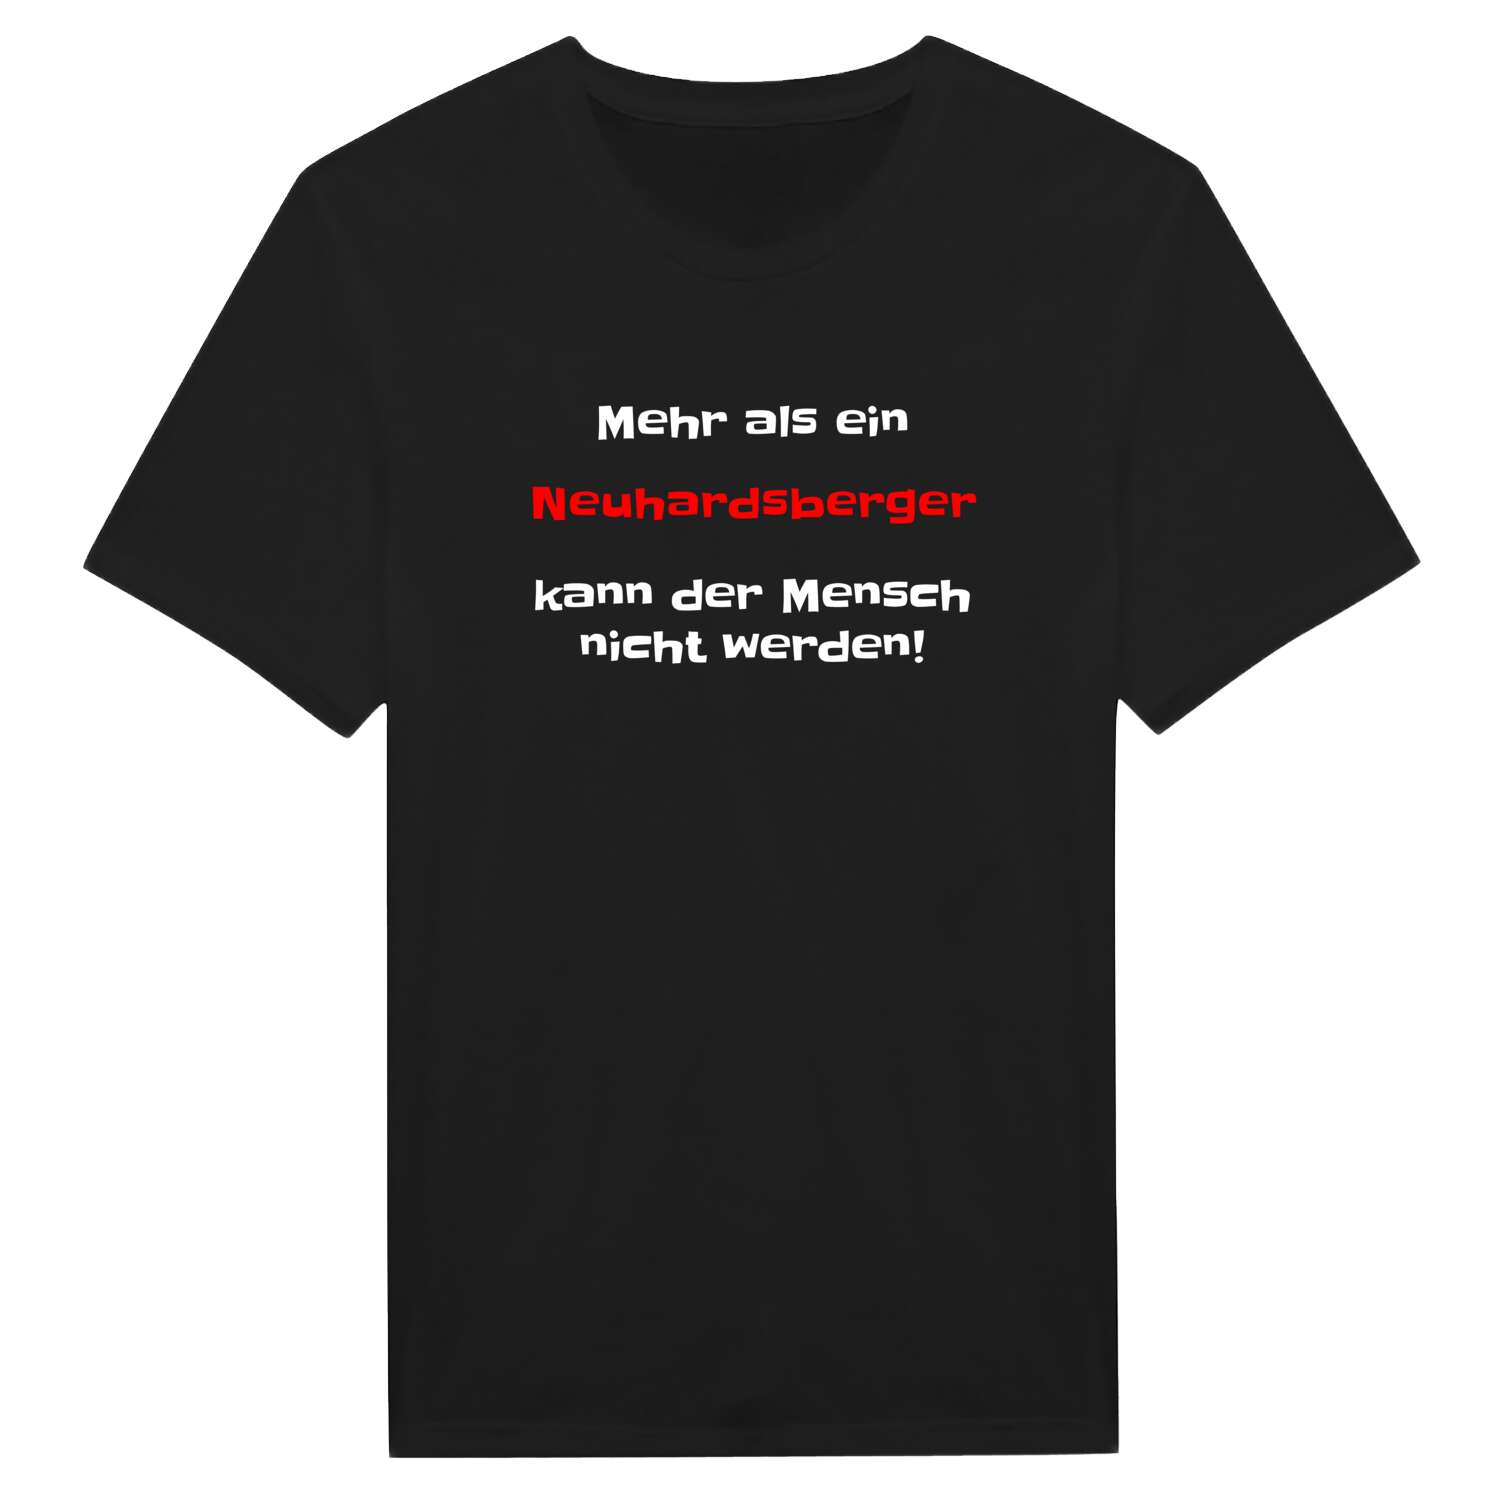 Neuhardsberg T-Shirt »Mehr als ein«